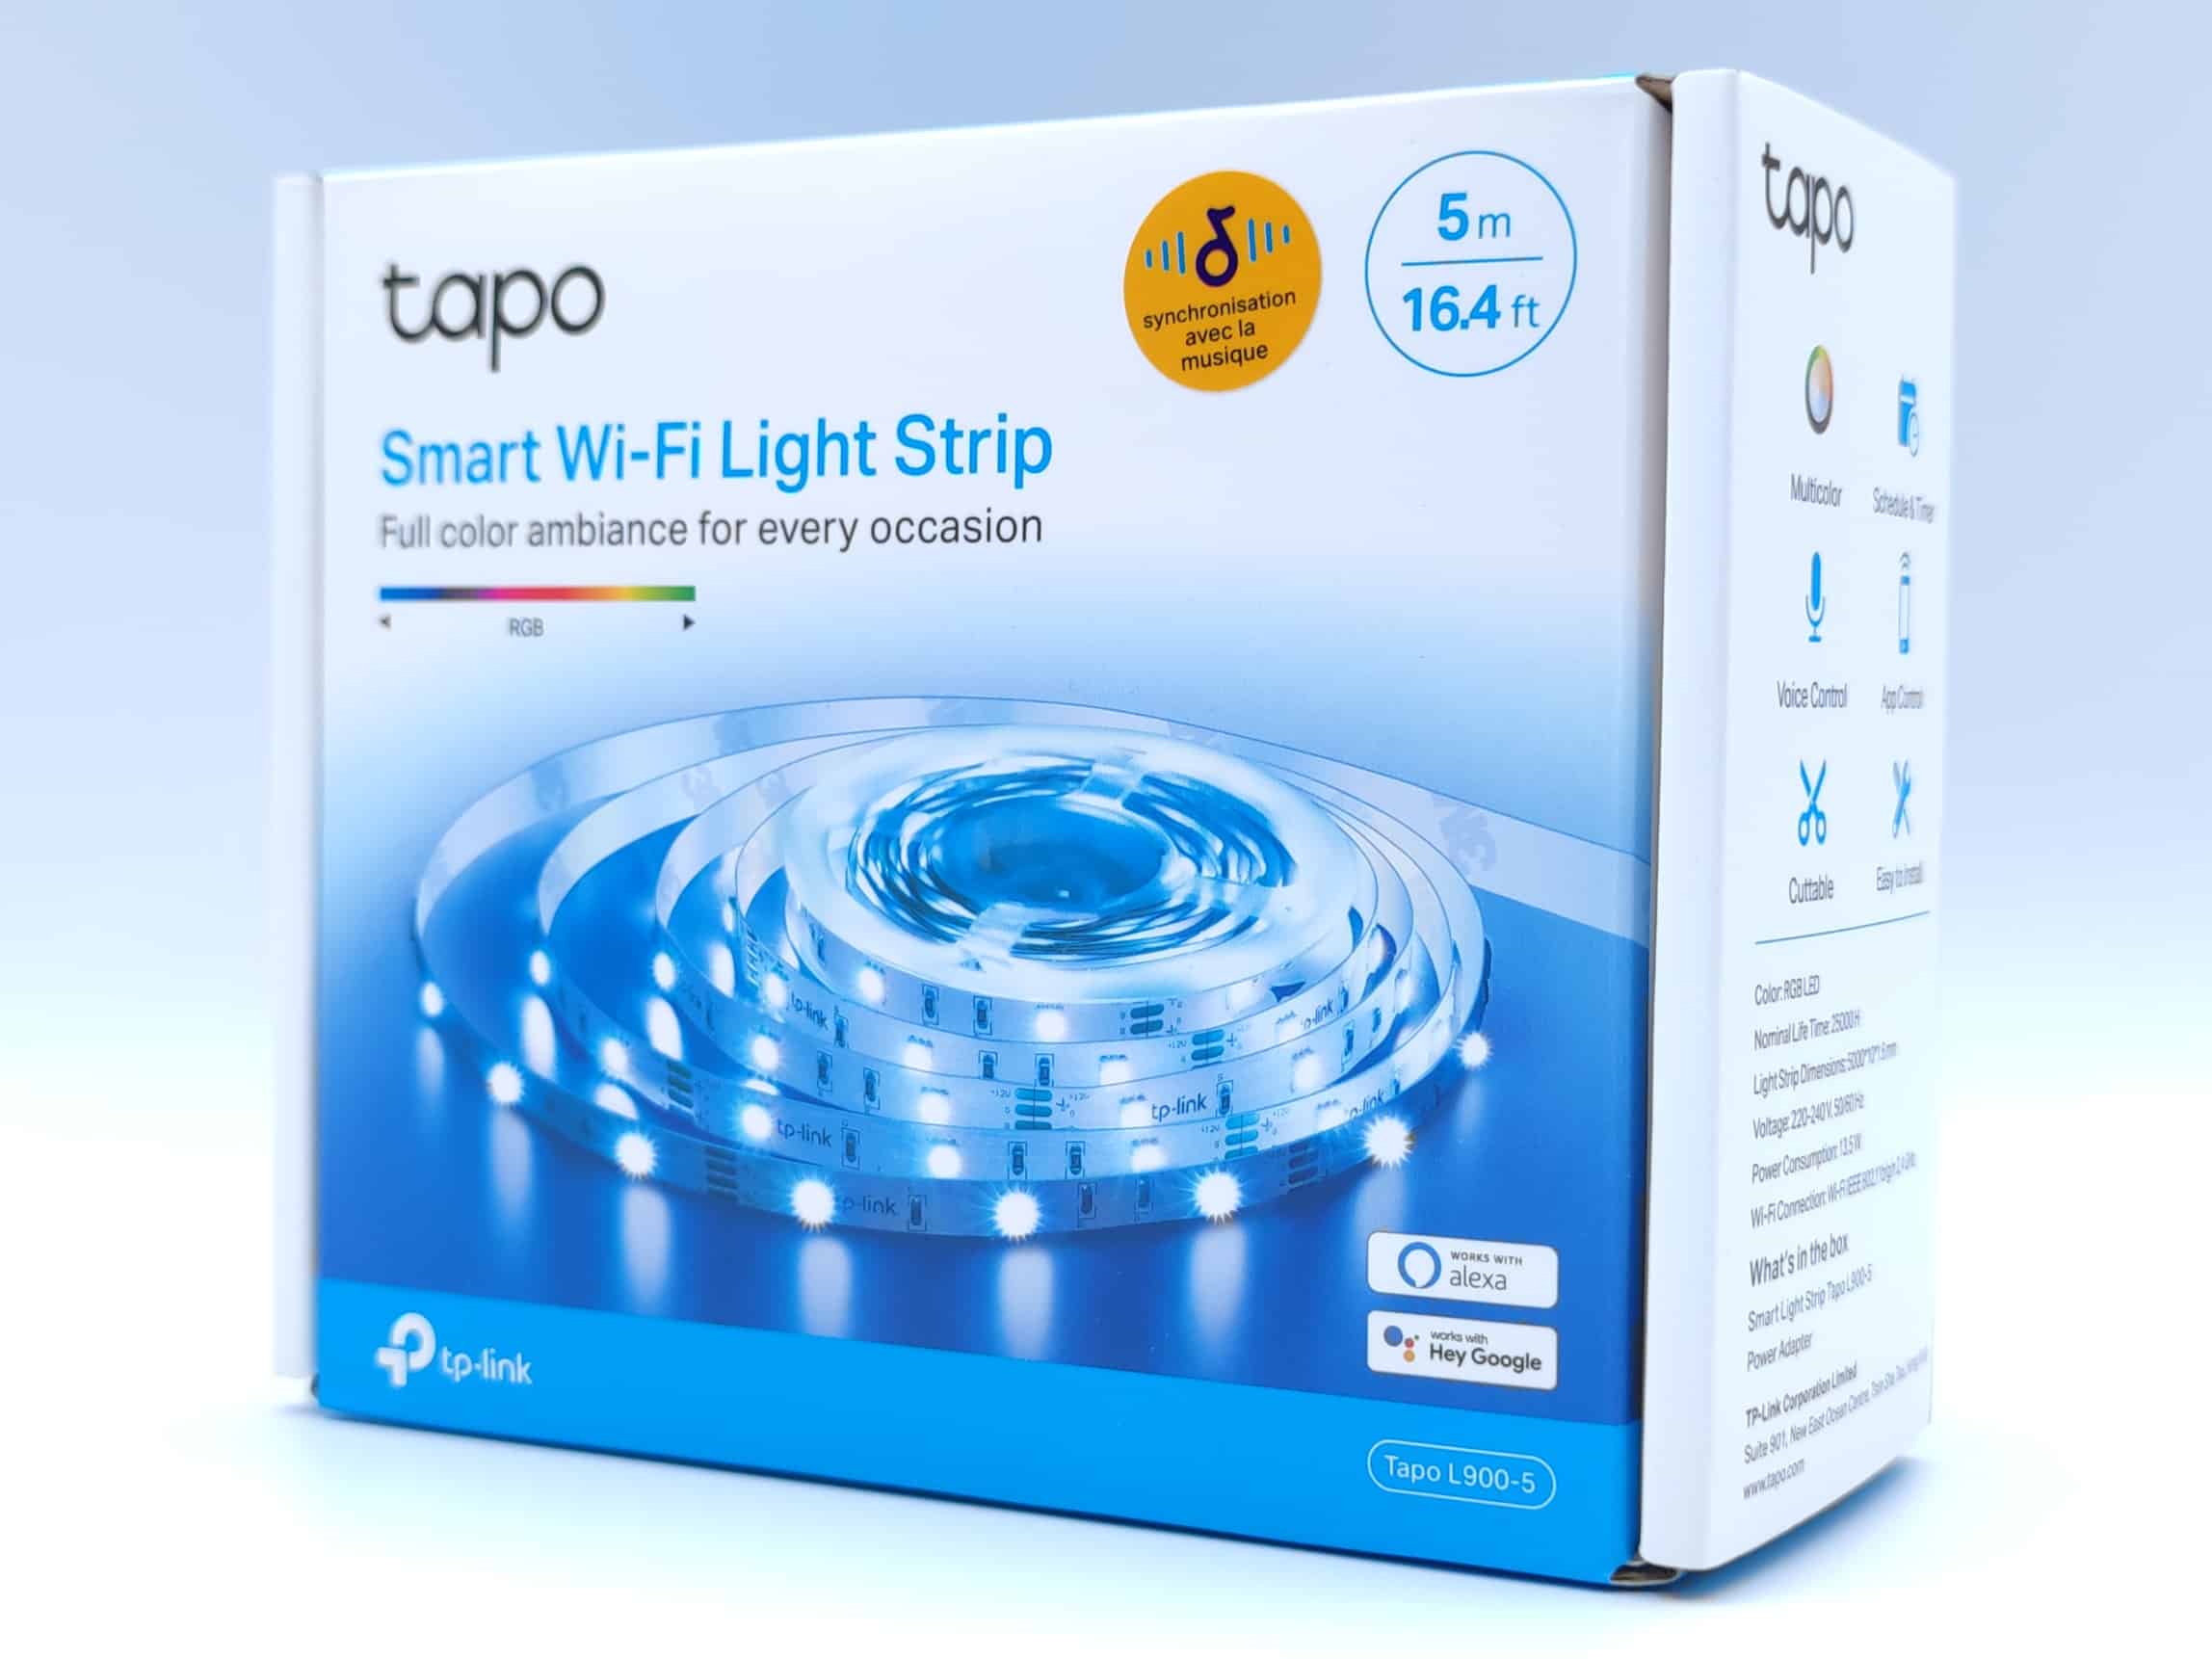 Ruban LED - TP-LINK - TAPO L920-5 - 5M - WiFi - RGB 16 millions de